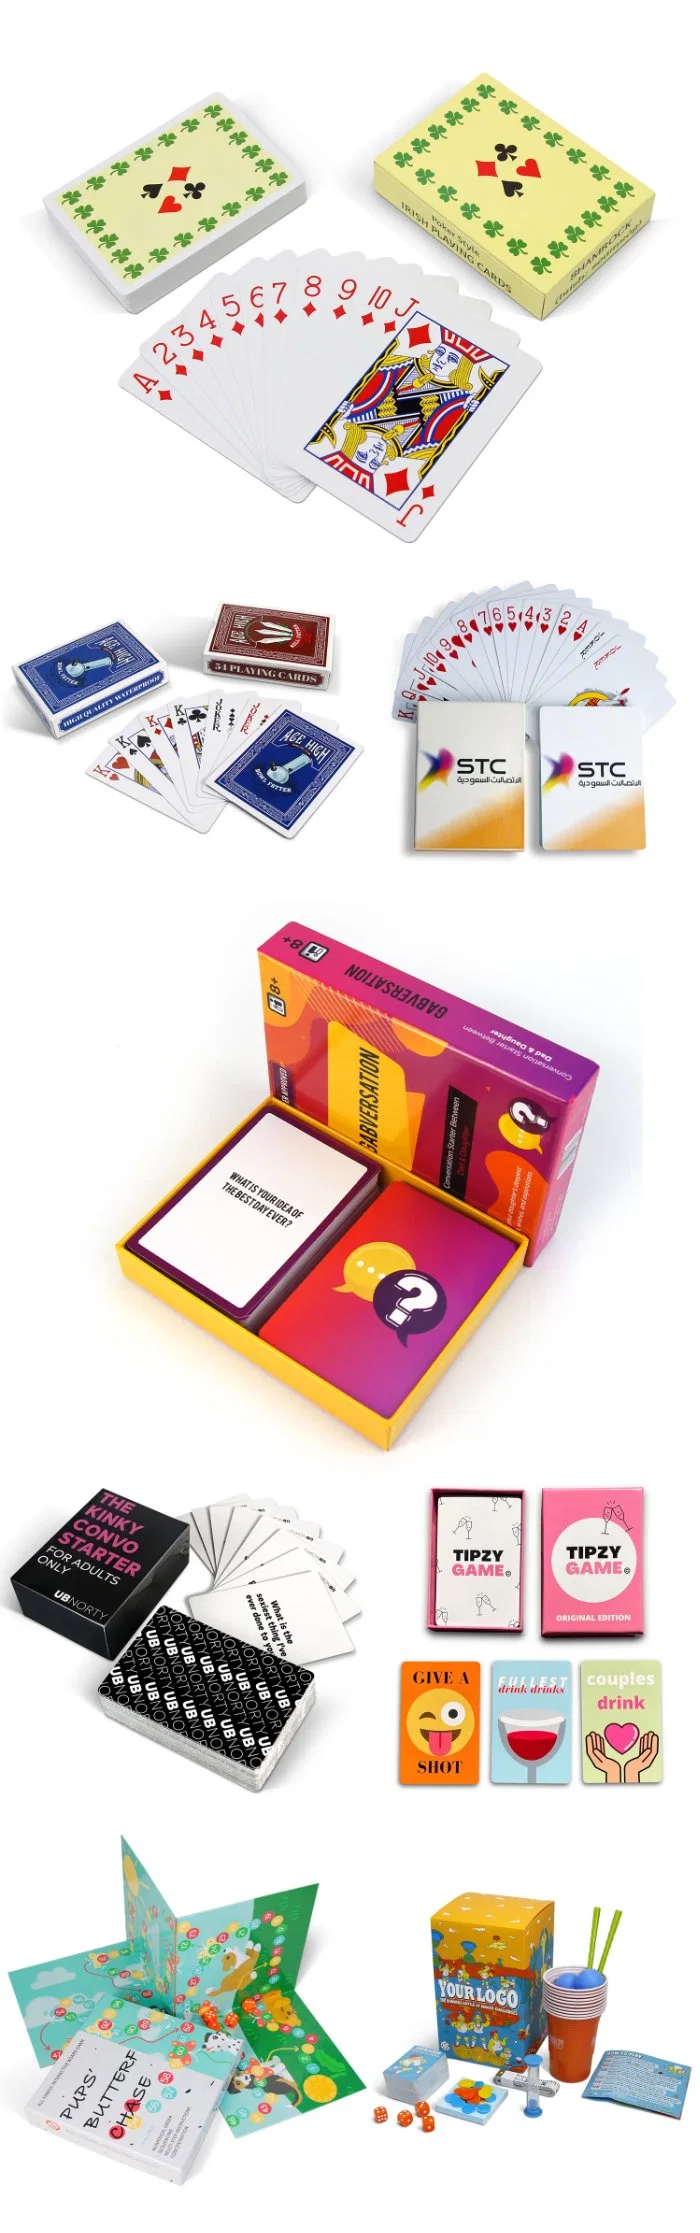 Custom рекламных подарков Таро карт в Интернете по вопросам образования карты карты в покер казино ПВХ велосипед бумаги пластиковые карты